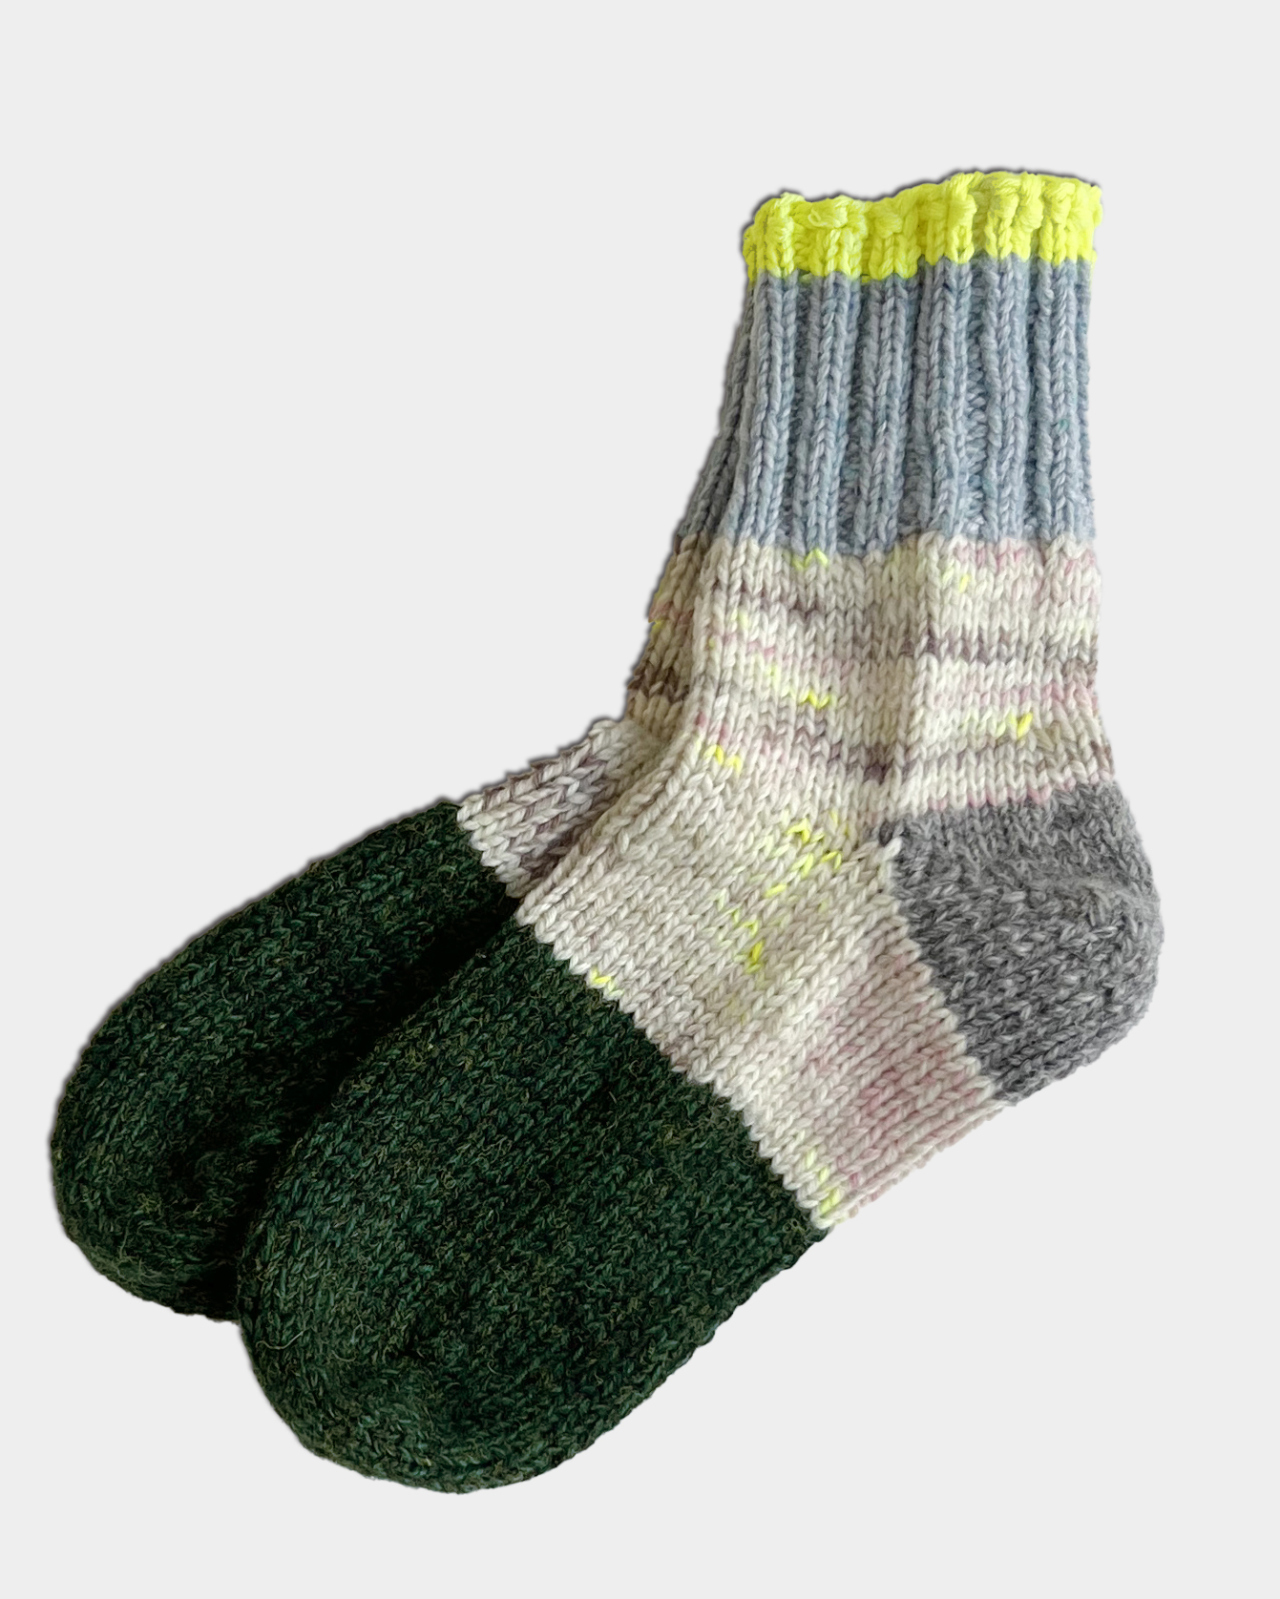 ちきくつした 手編みの靴下 | Giiton-Store(ギートンストア) | Giiton ...